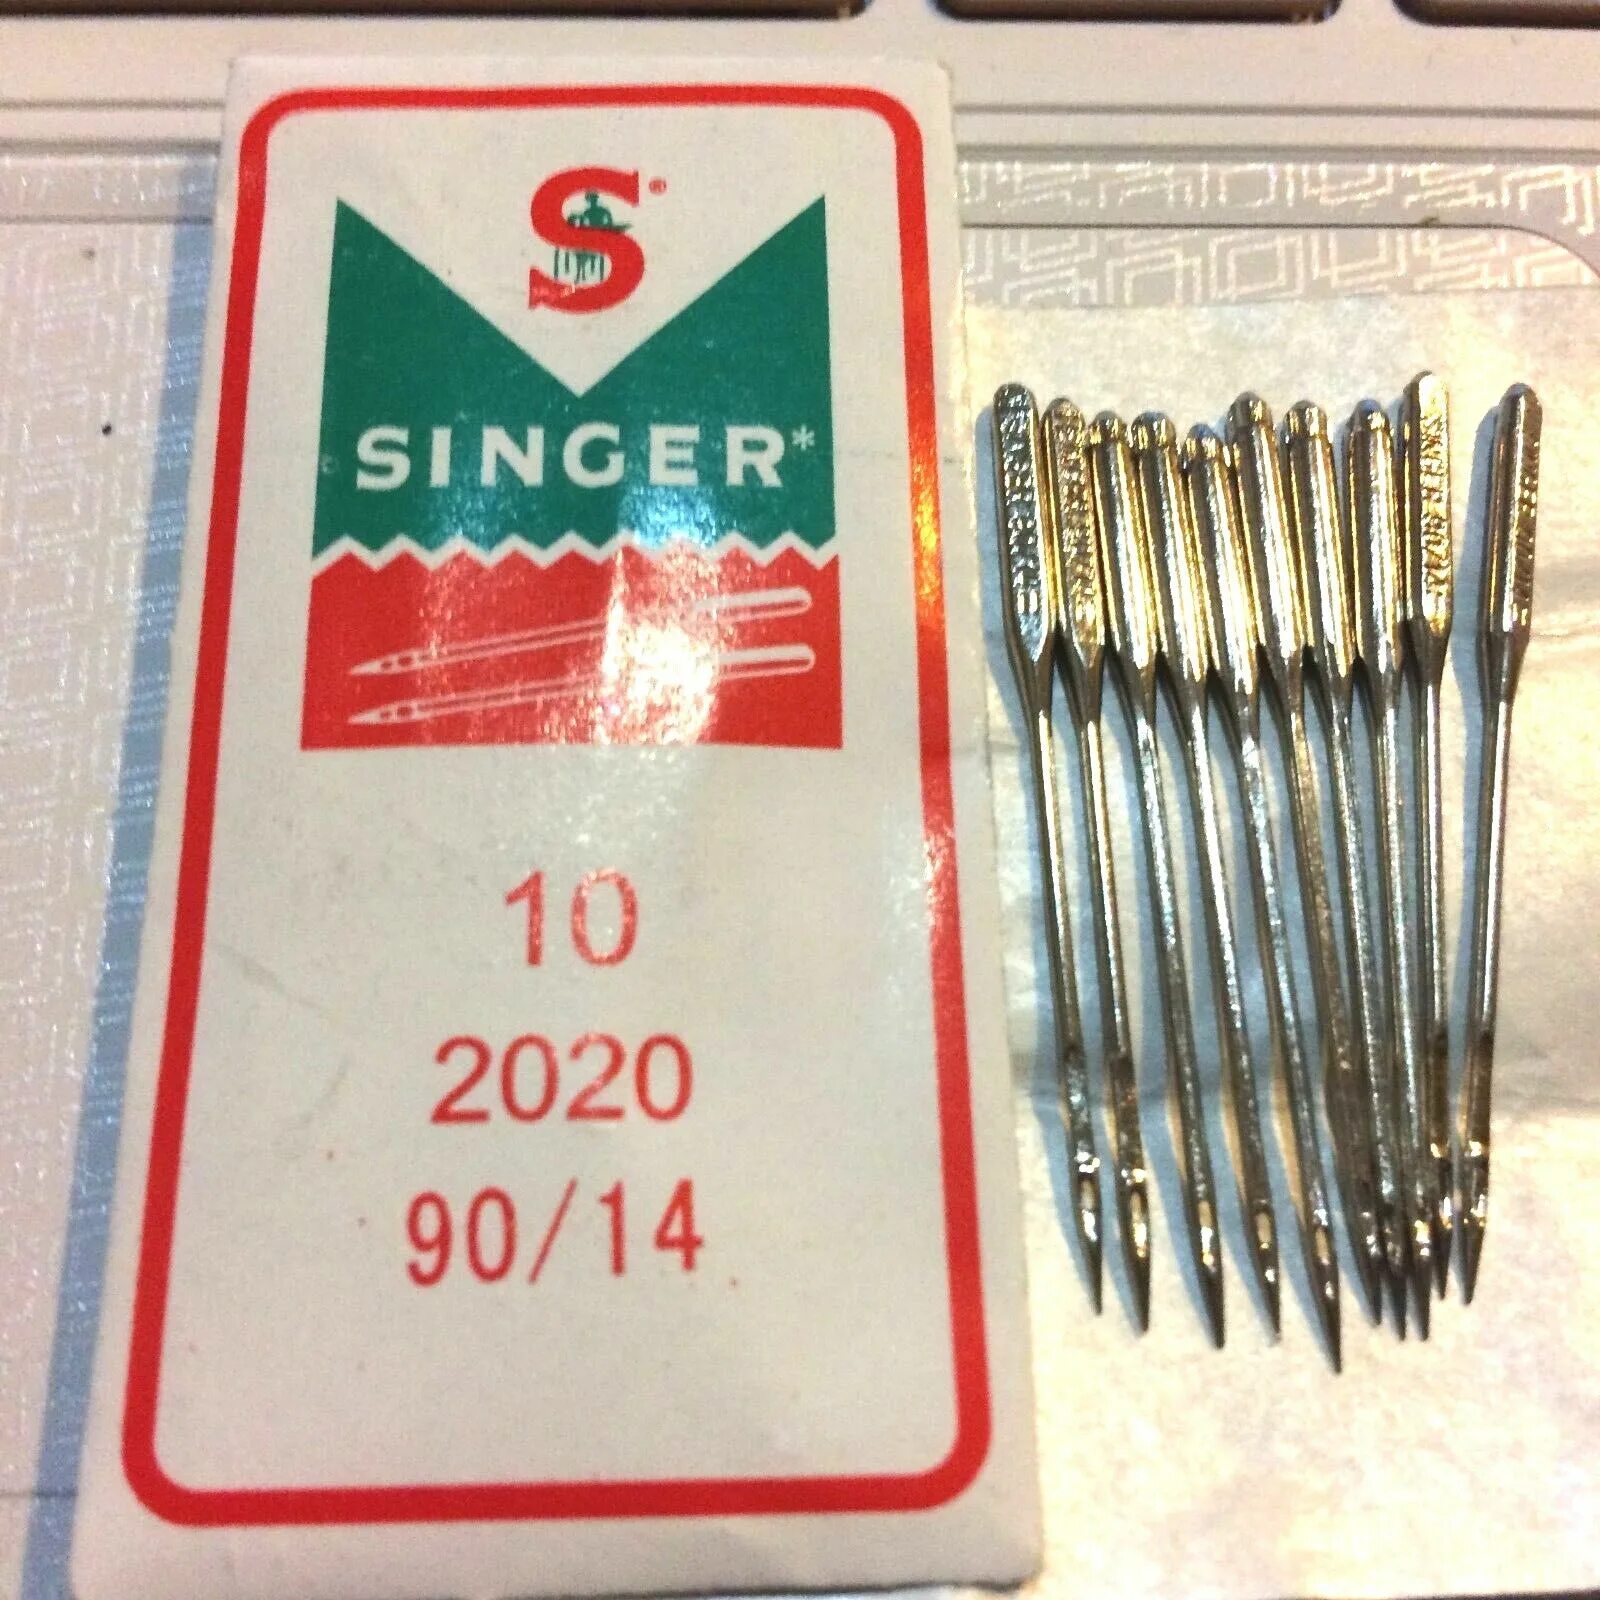 Швейные иглы Зингер 90/14. Singer 90/14 игла. Singer иглы для швейной машины 90/14. Иглы Singer 2020.